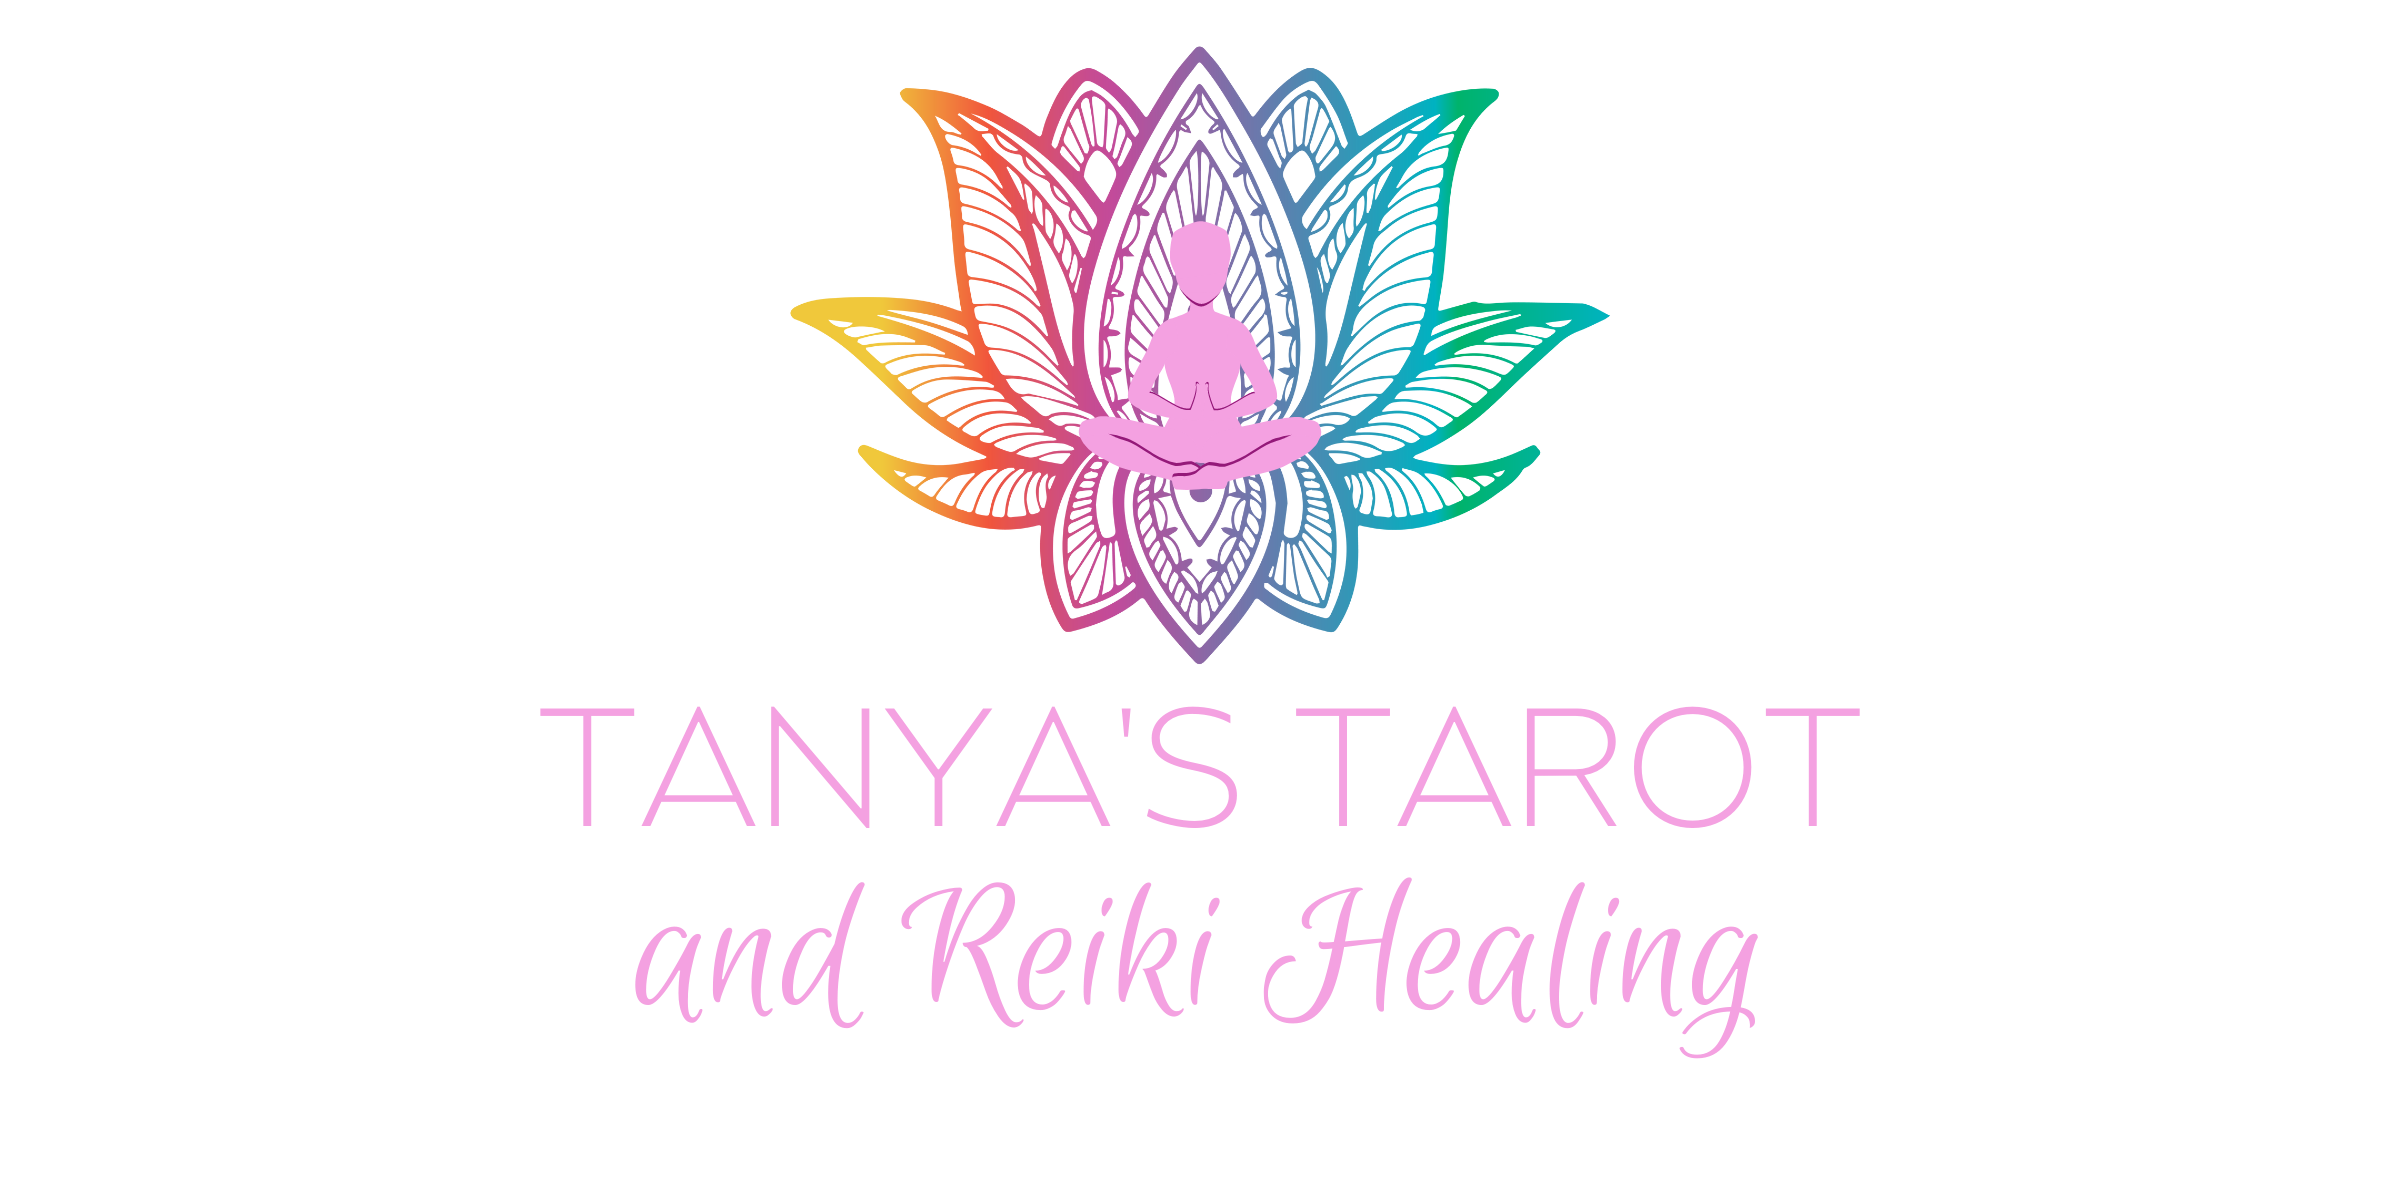 Tanya's Tarot and Reiki